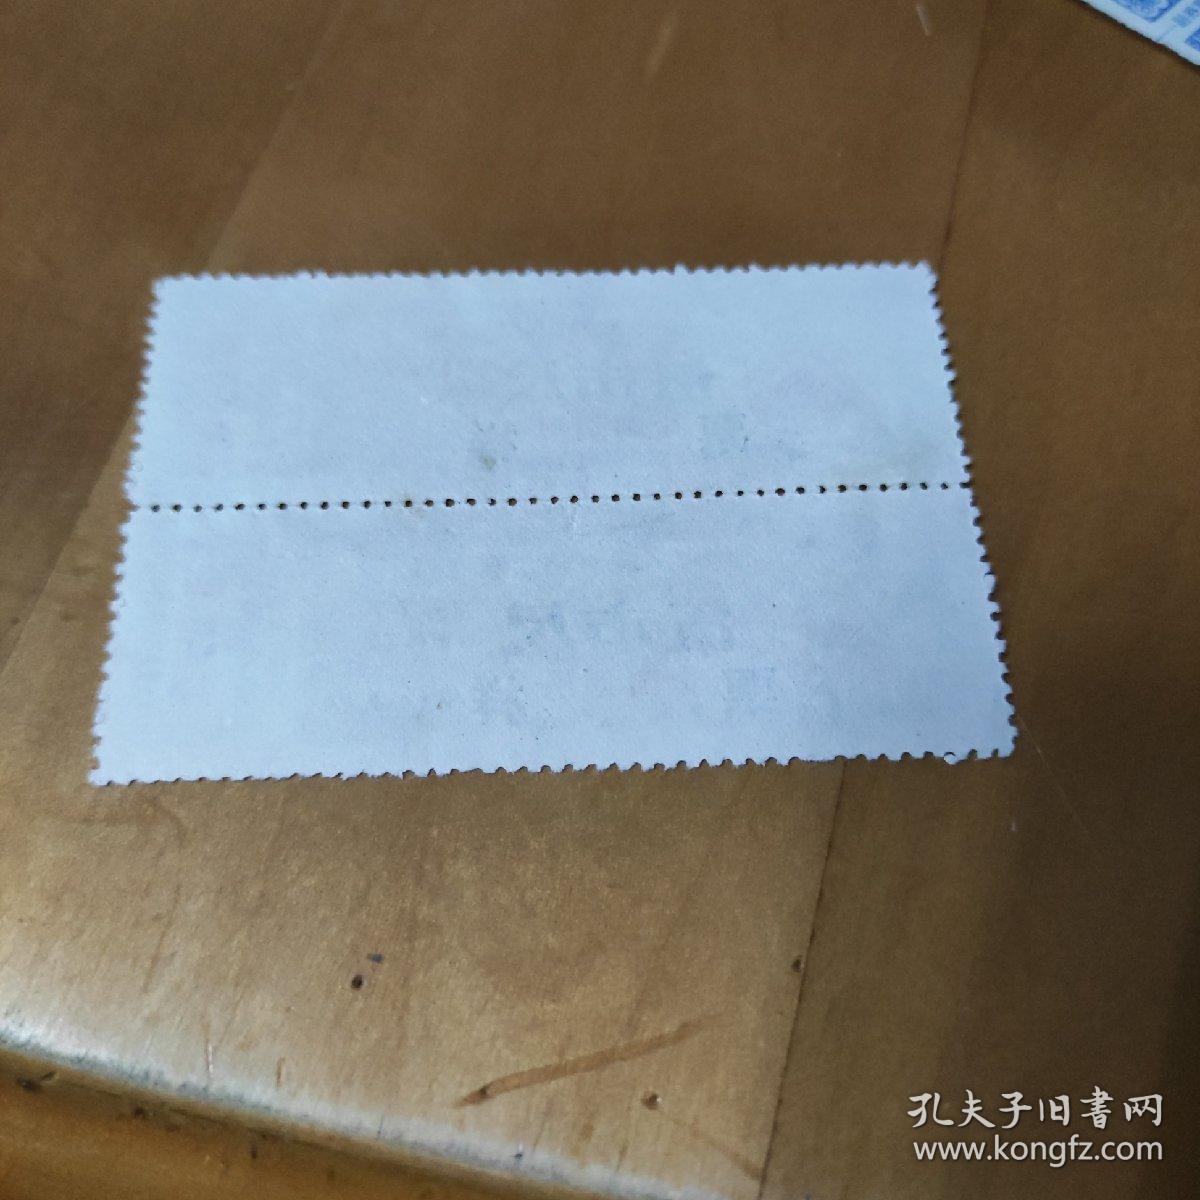 中华人民共和国商业部军用棉布购买证、票样